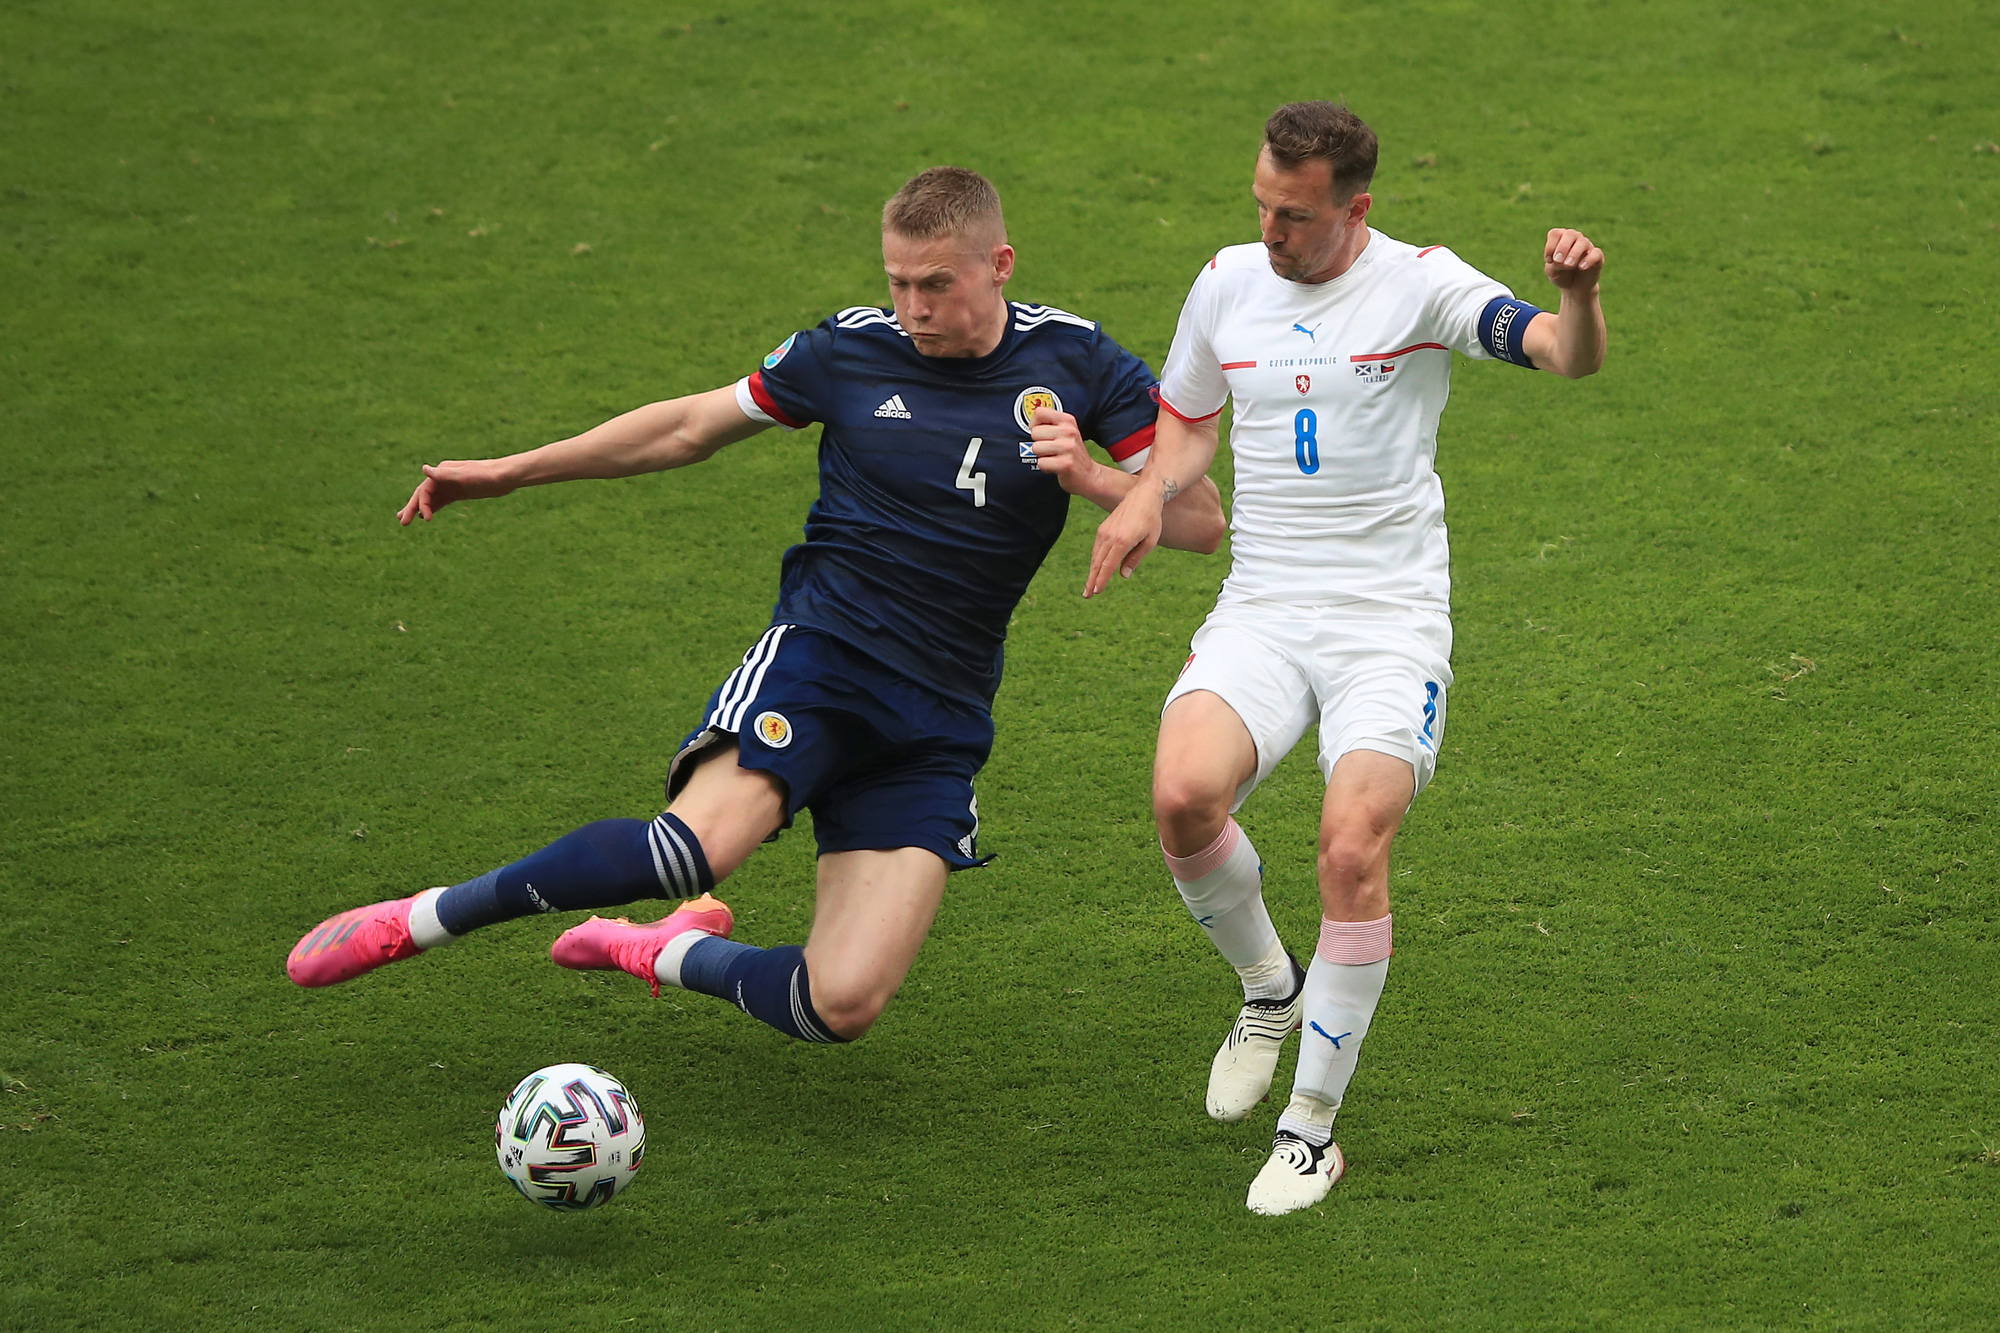 Siêu phẩm giữa sân giúp CH Czech nhấn chìm tuyển Scotland - Ảnh 7.